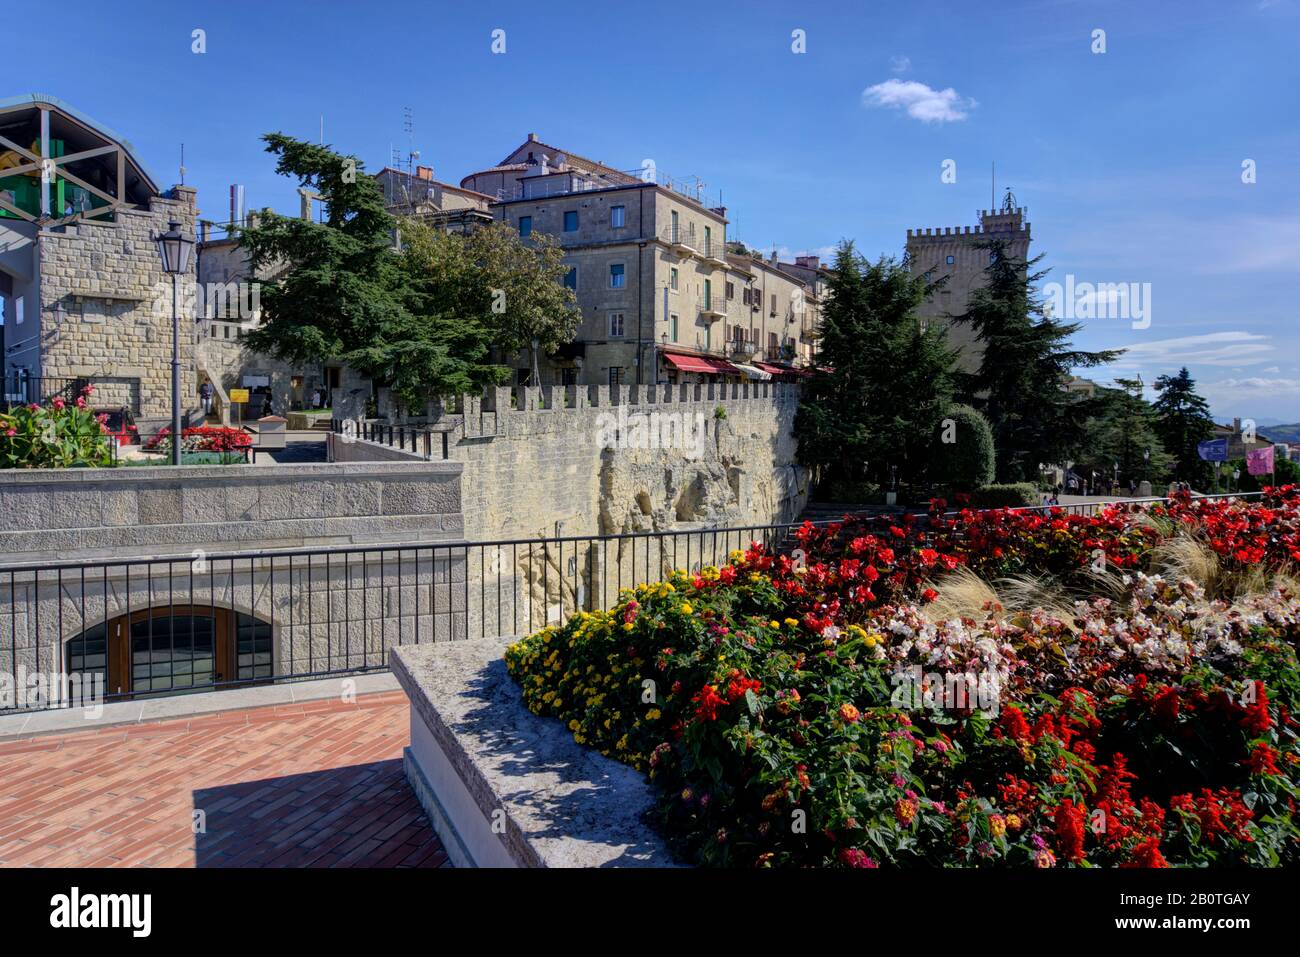 San Marino, San Marino - 19. Oktober 2019: Landschaftlich schön über die Aussichtsplattform in Richtung alter, steinerner Bauwerke, die bunte Blumen und Touristen zeigen Stockfoto